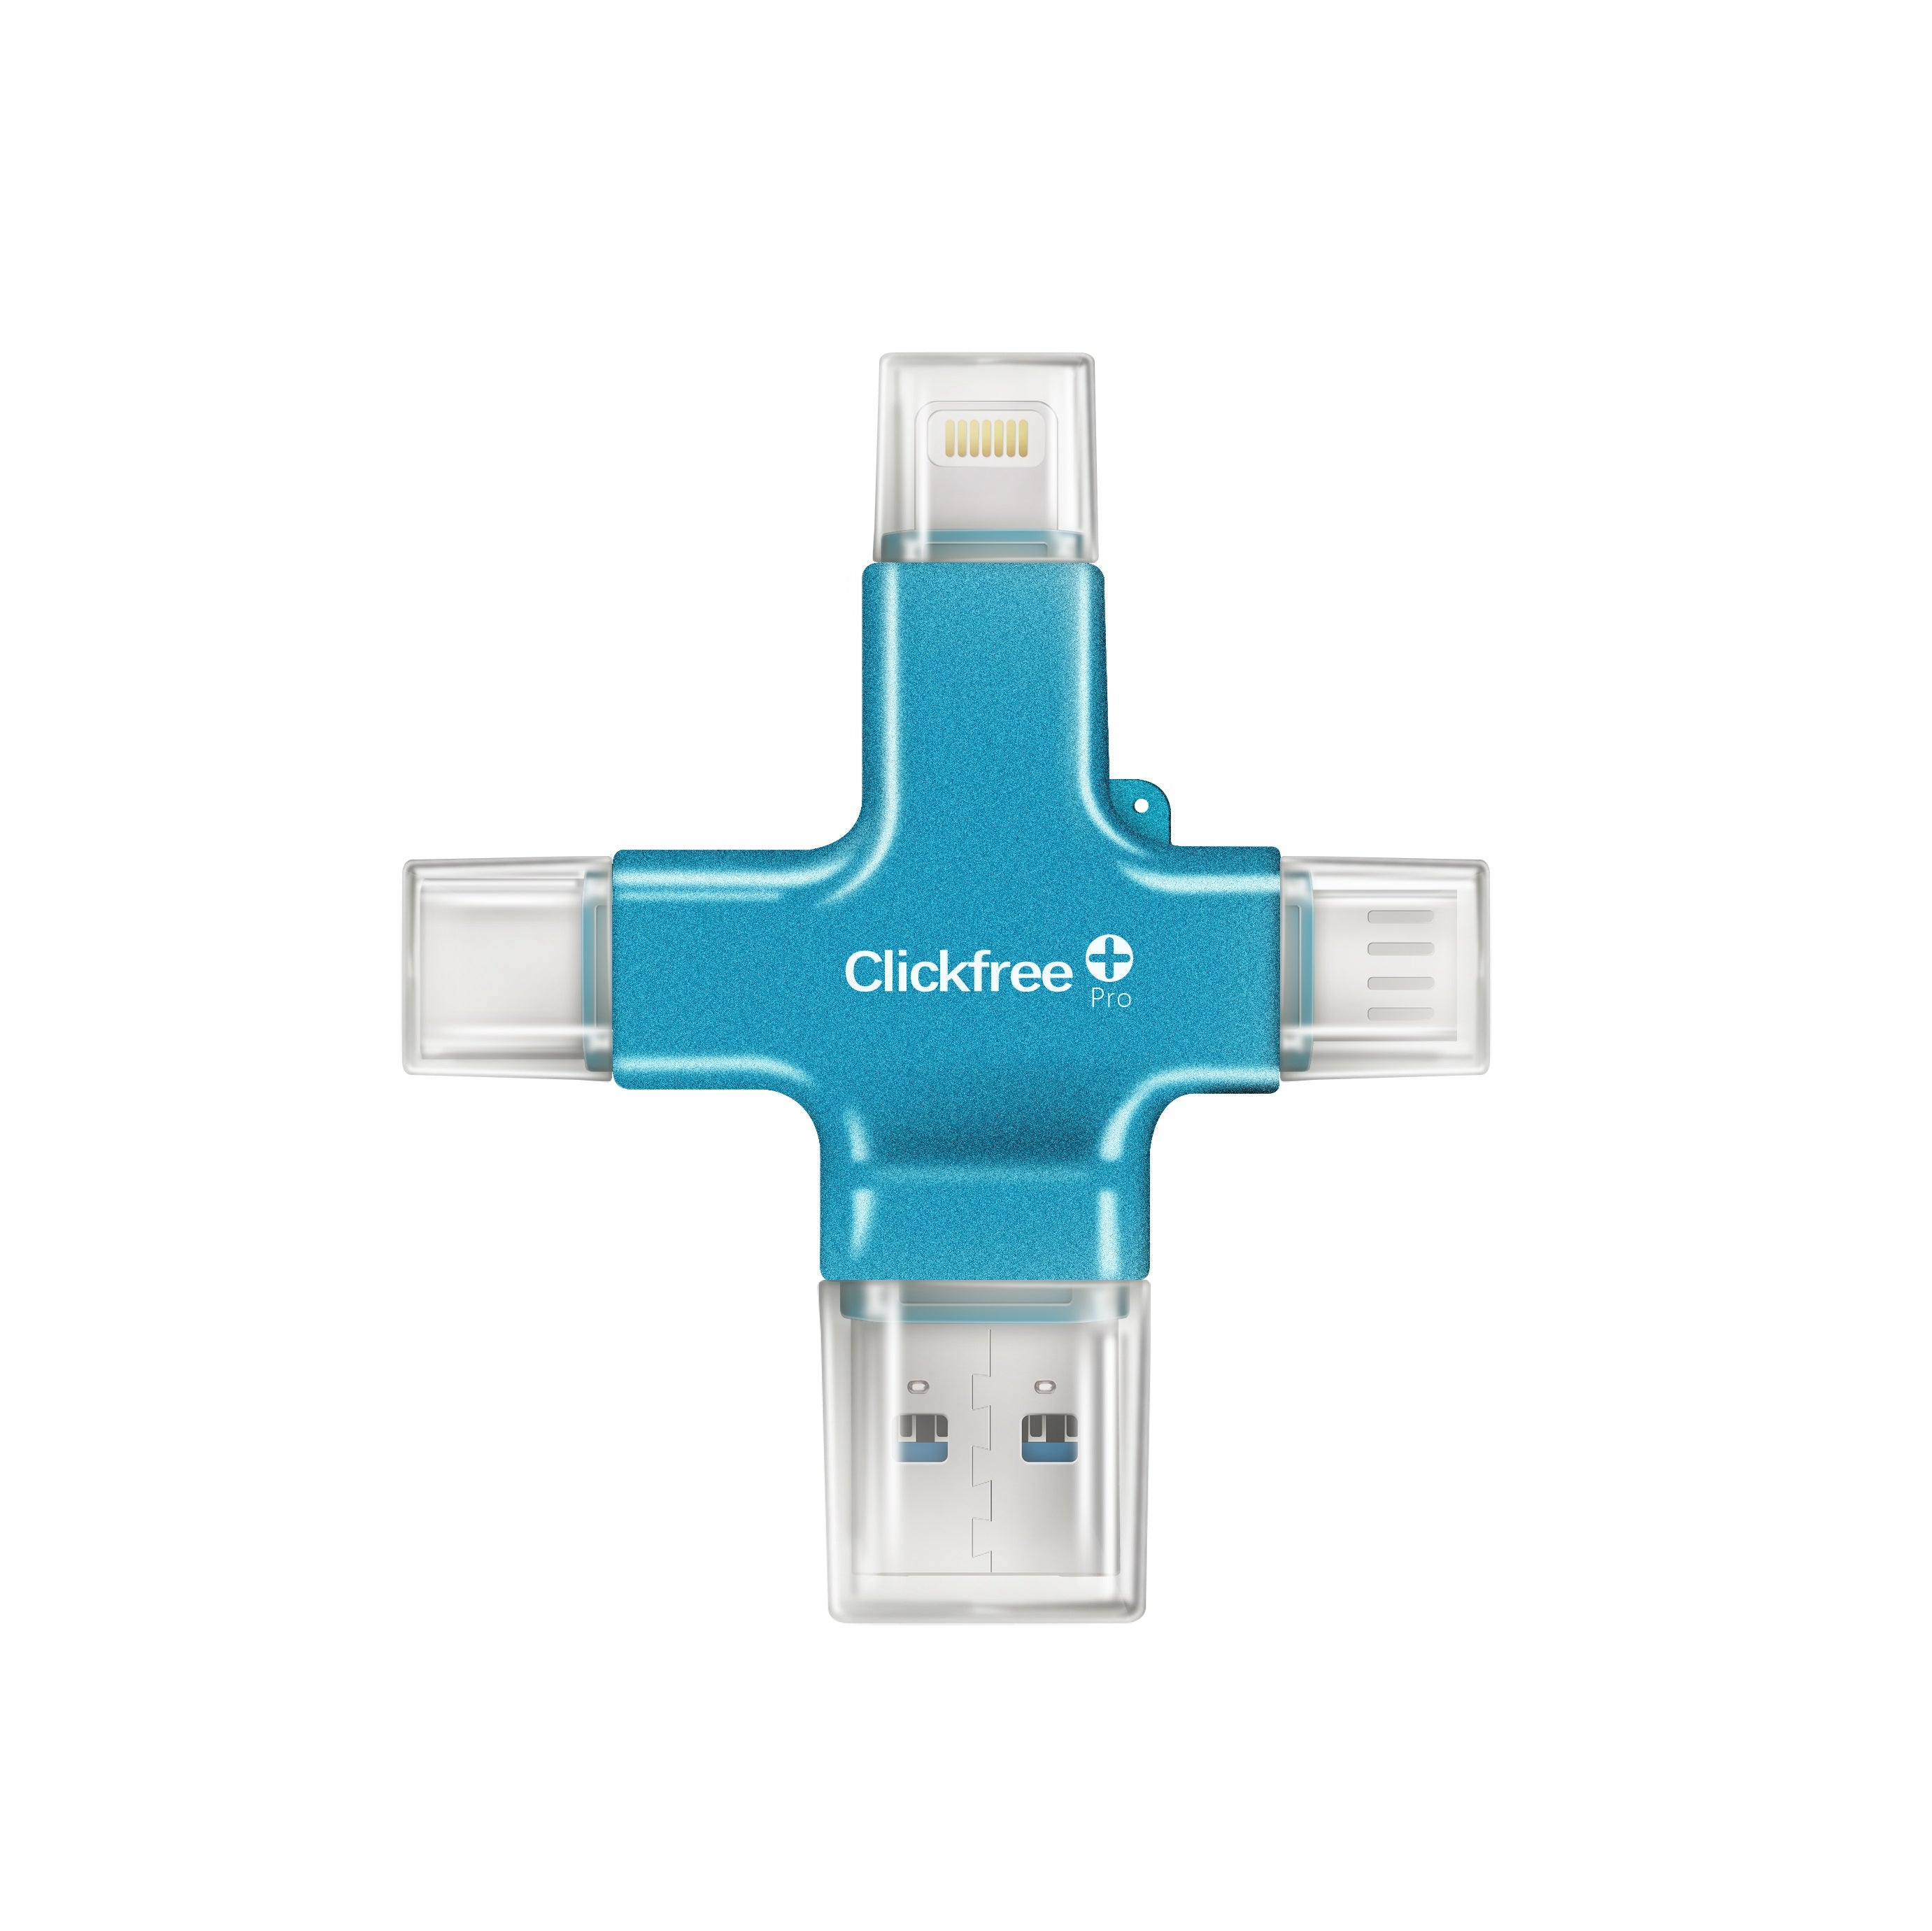 Clickfree USB - Customer Upgrade Program - Clickfree